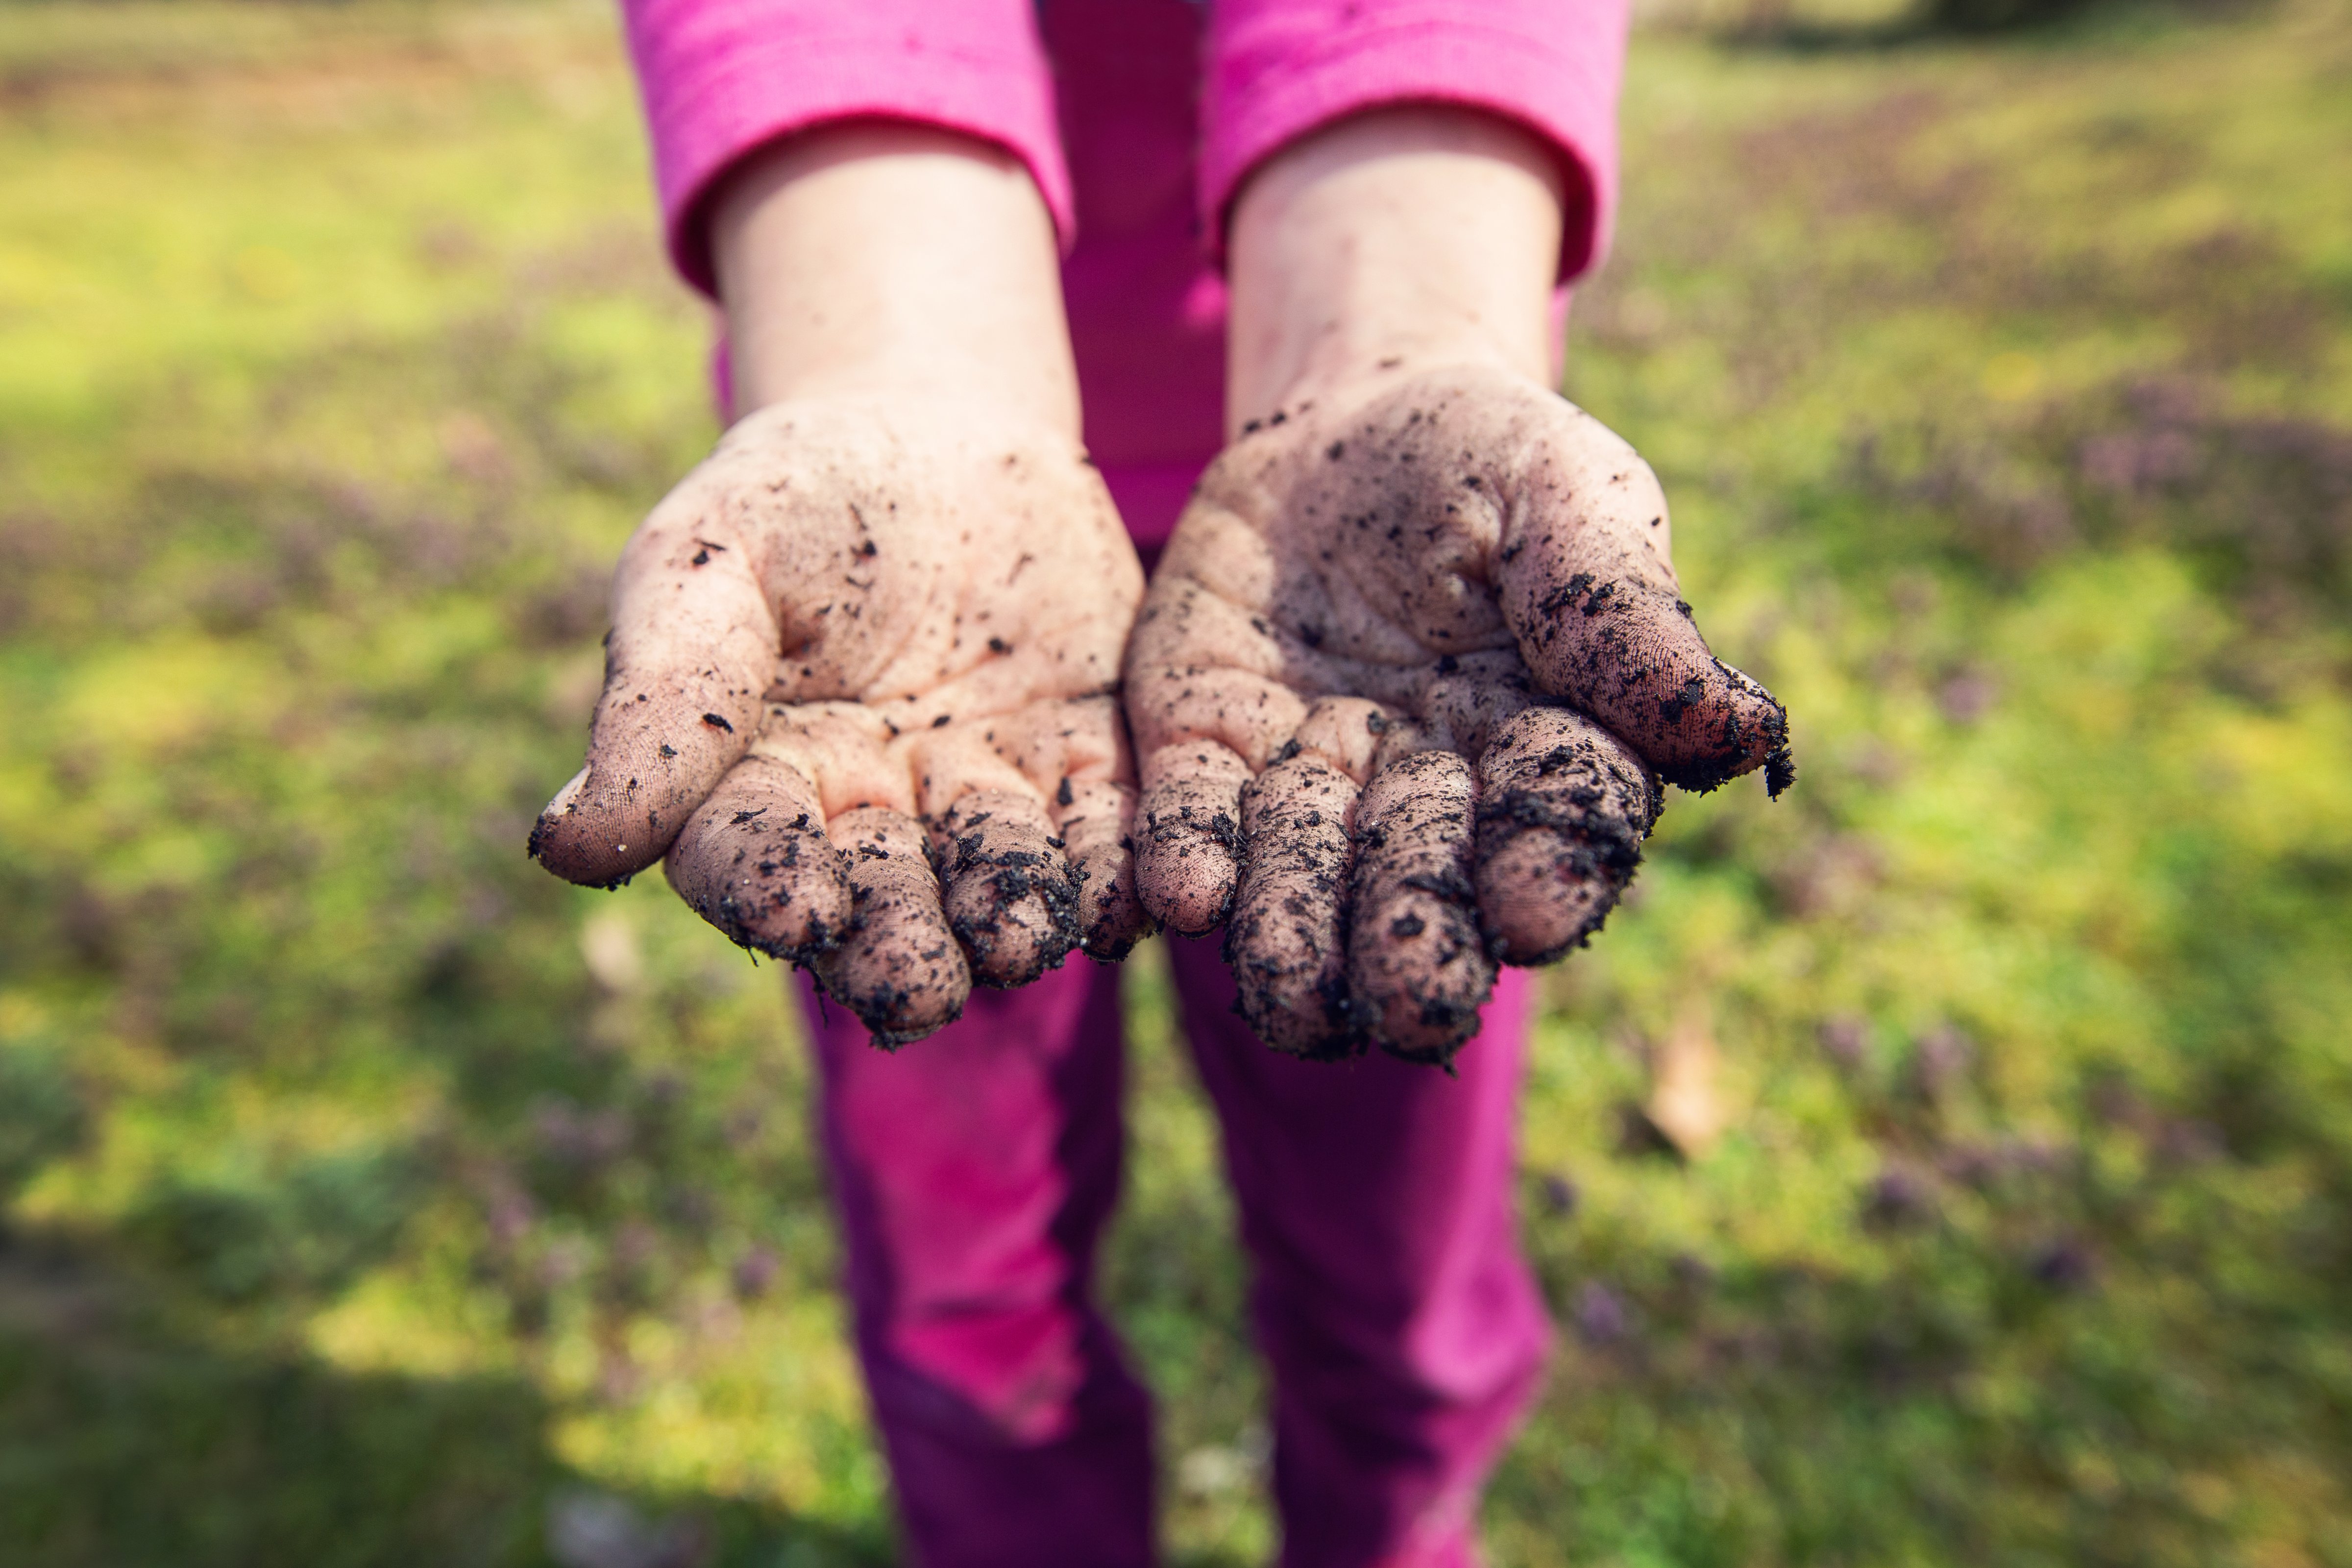 Gardening Hands - let your kid eat dirt